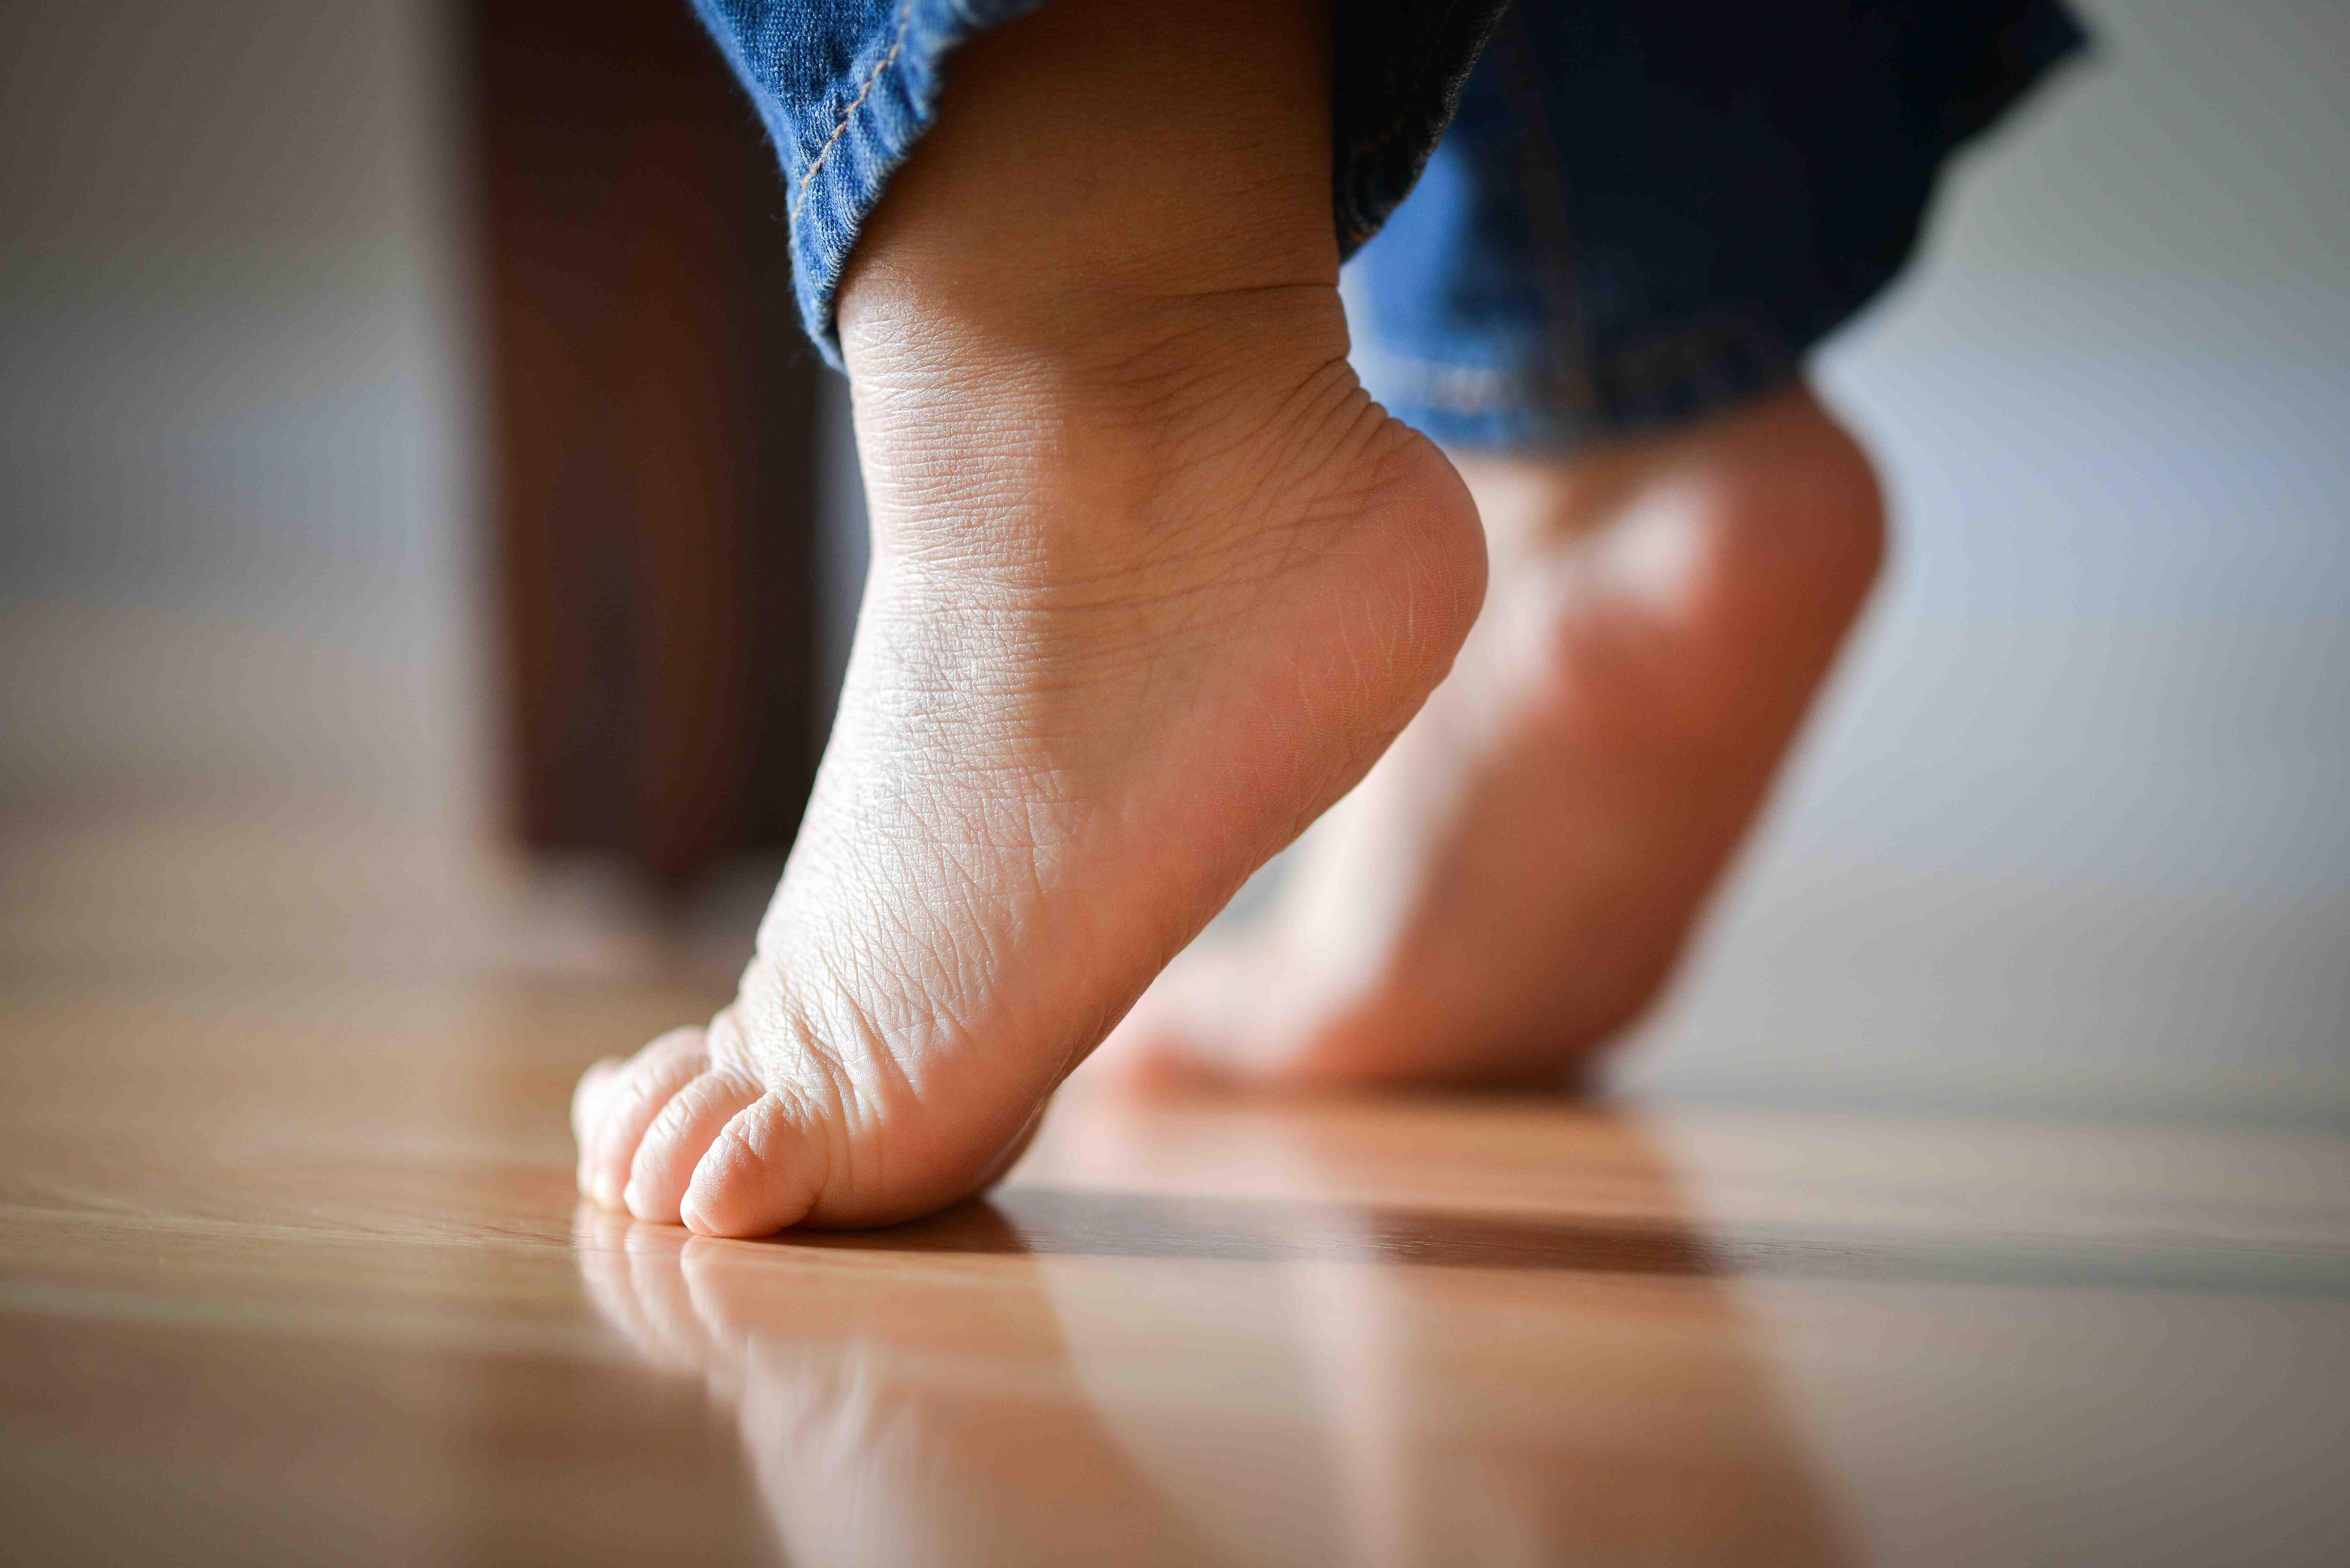 Caminar en puntas de pie: 9 señales de autismo que ningún padre